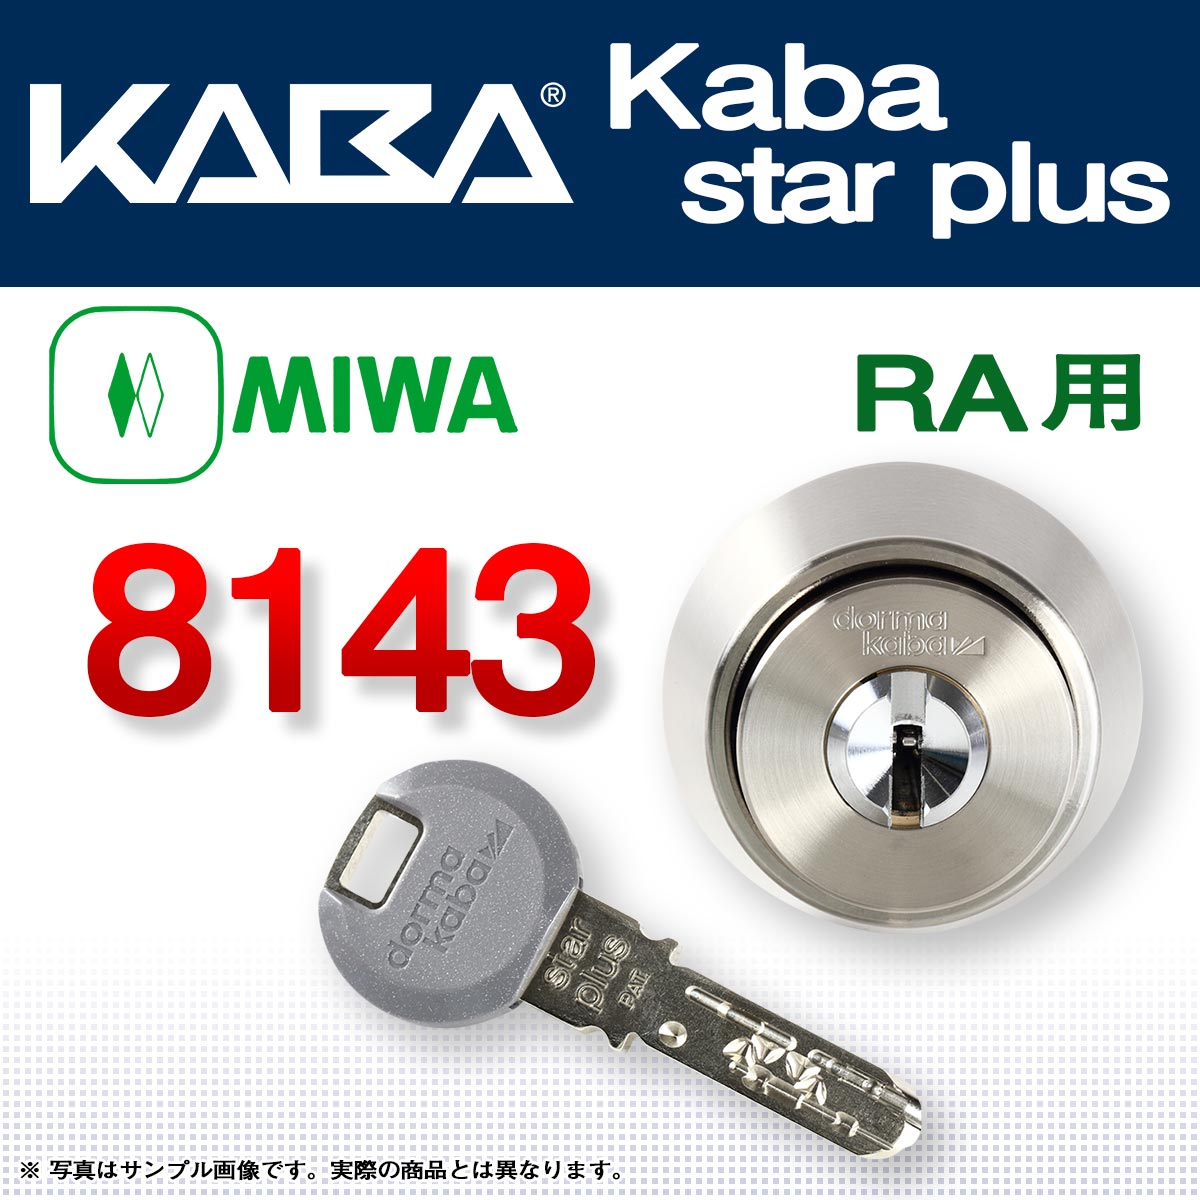 Kaba star plus 8143(NI) - 2